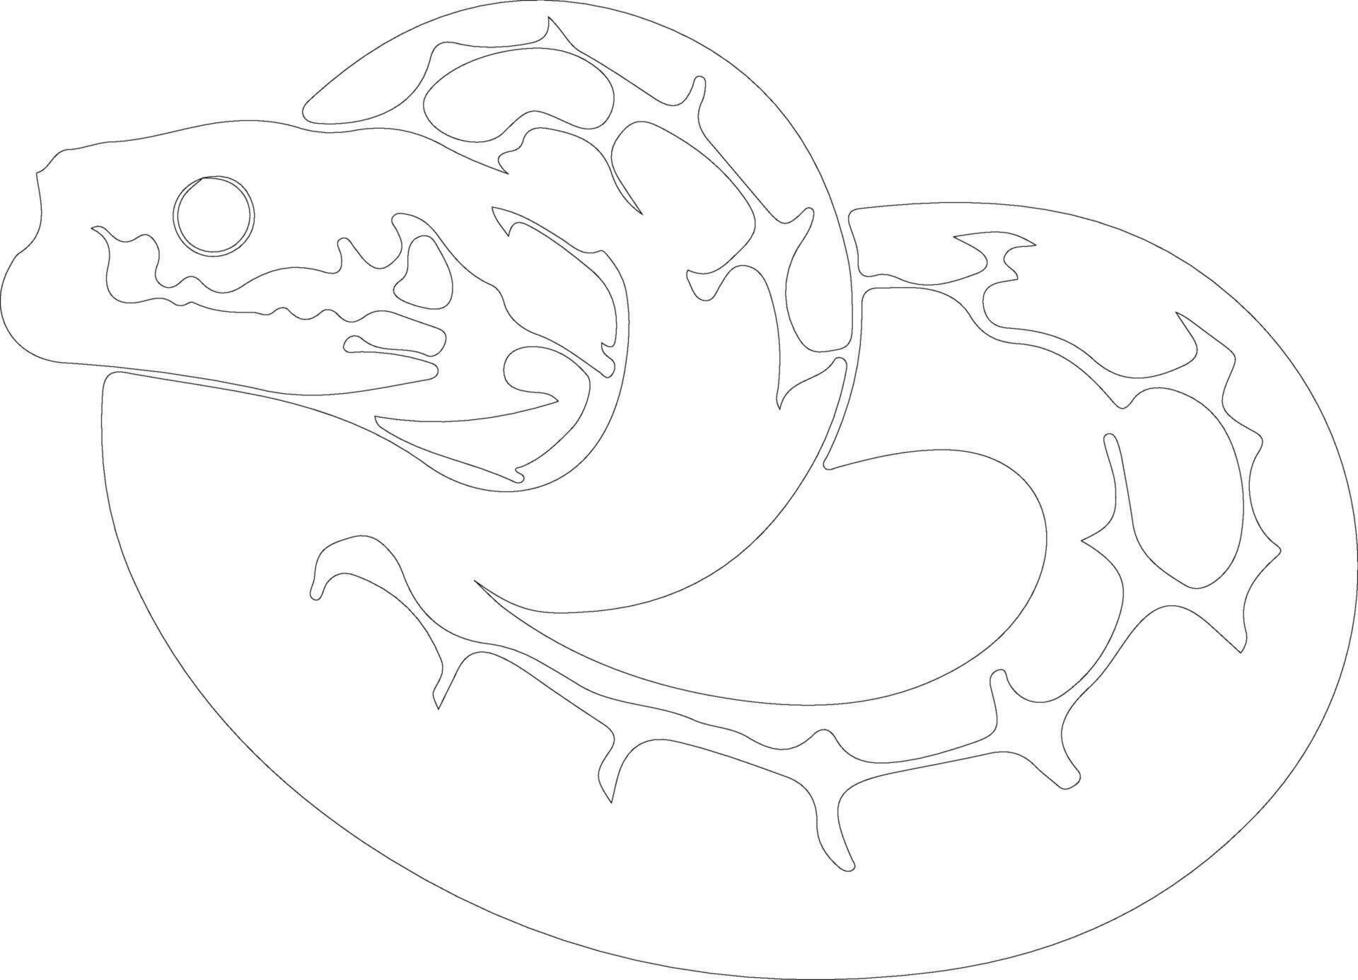 Serpente toro schema silhouette vettore